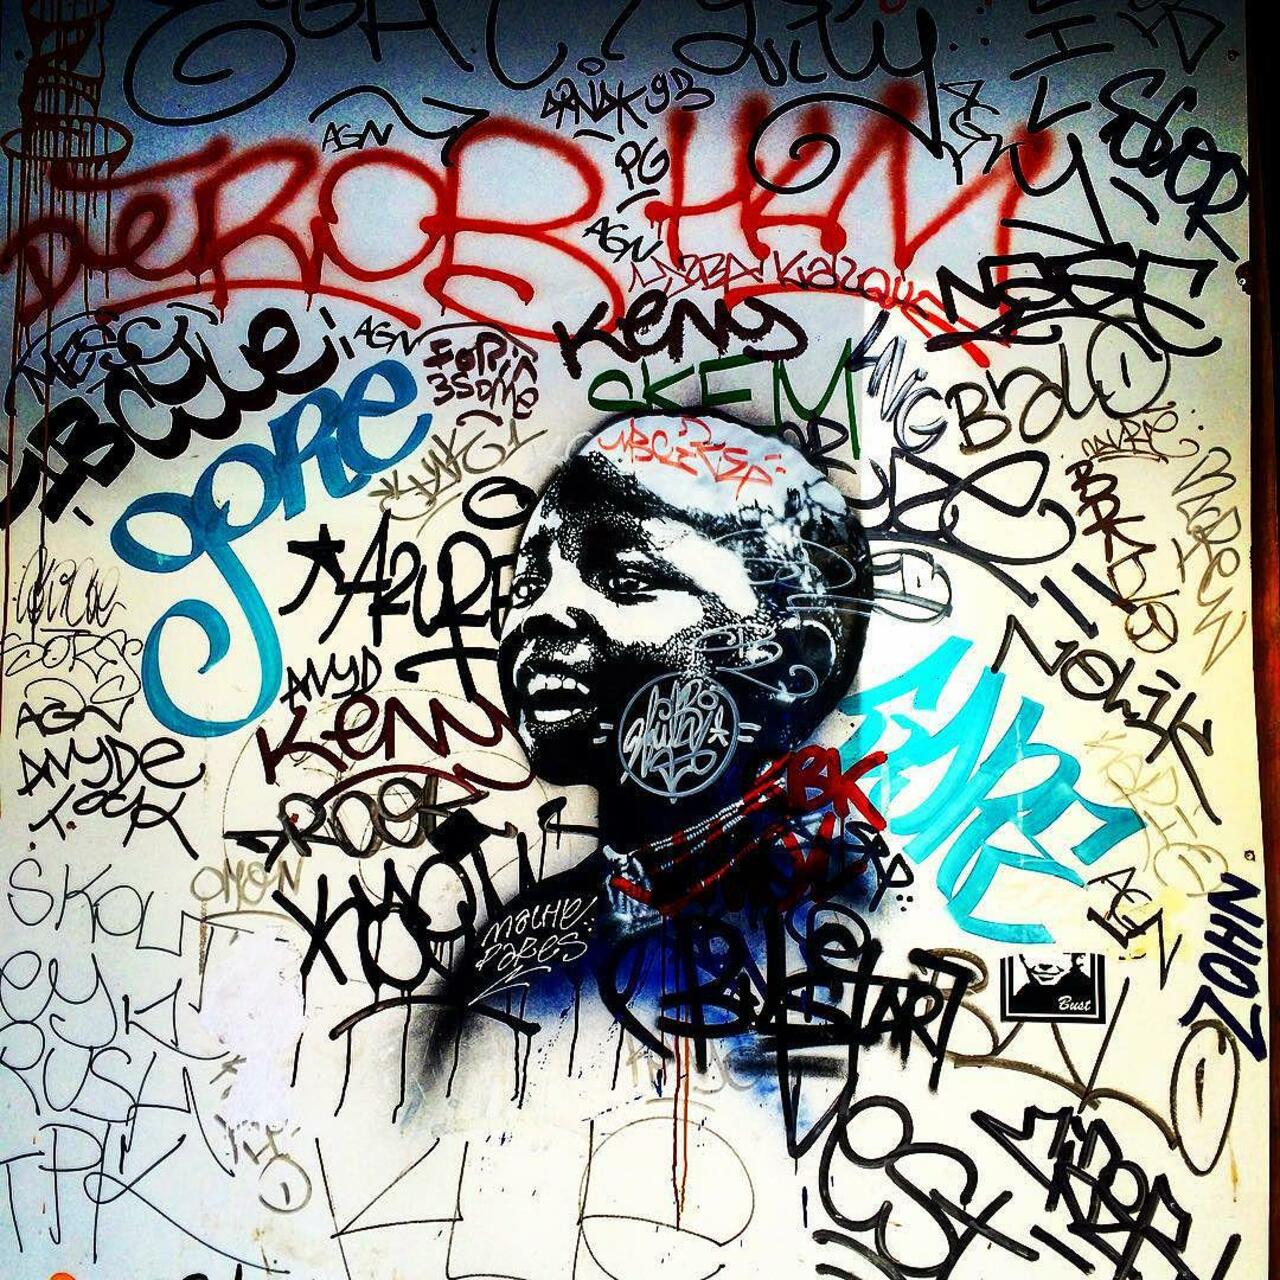 glaucous: RT circumjacent_fr: #Paris #graffiti photo by tamaria77 http://ift.tt/1FDxU5H #StreetArt http://t.co/JjphQyvPuf